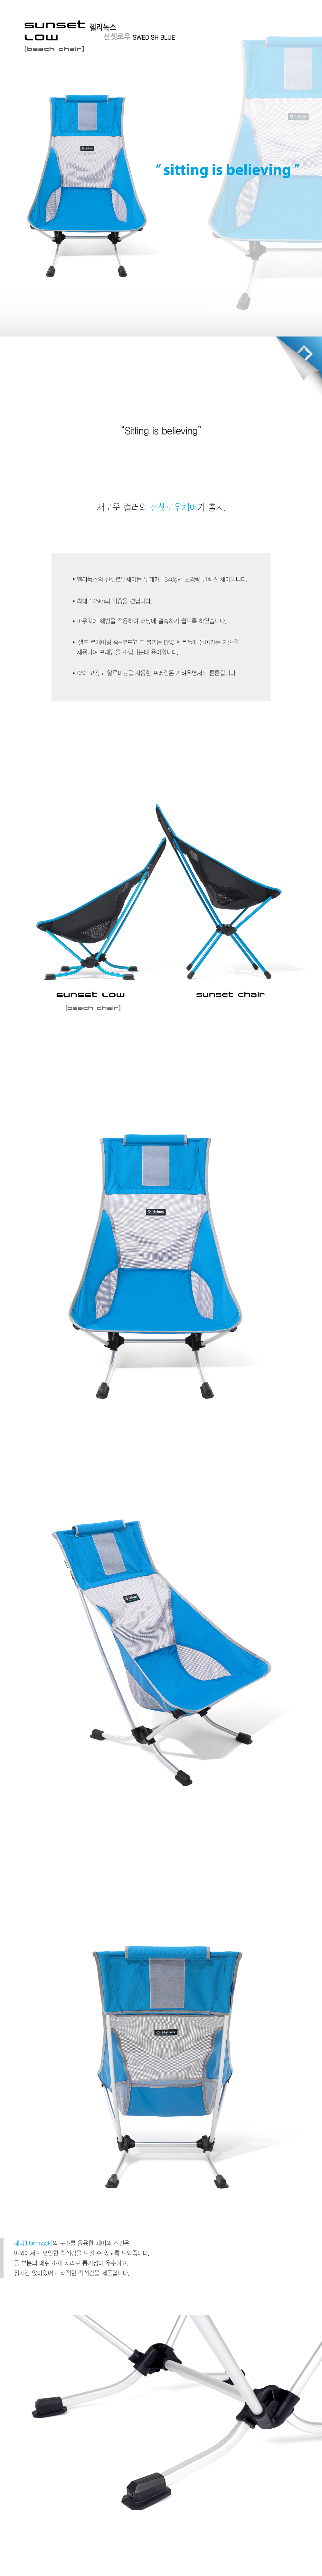 20150720-Helinox_beach-chair_ǰ_Swedish-blue1.jpg